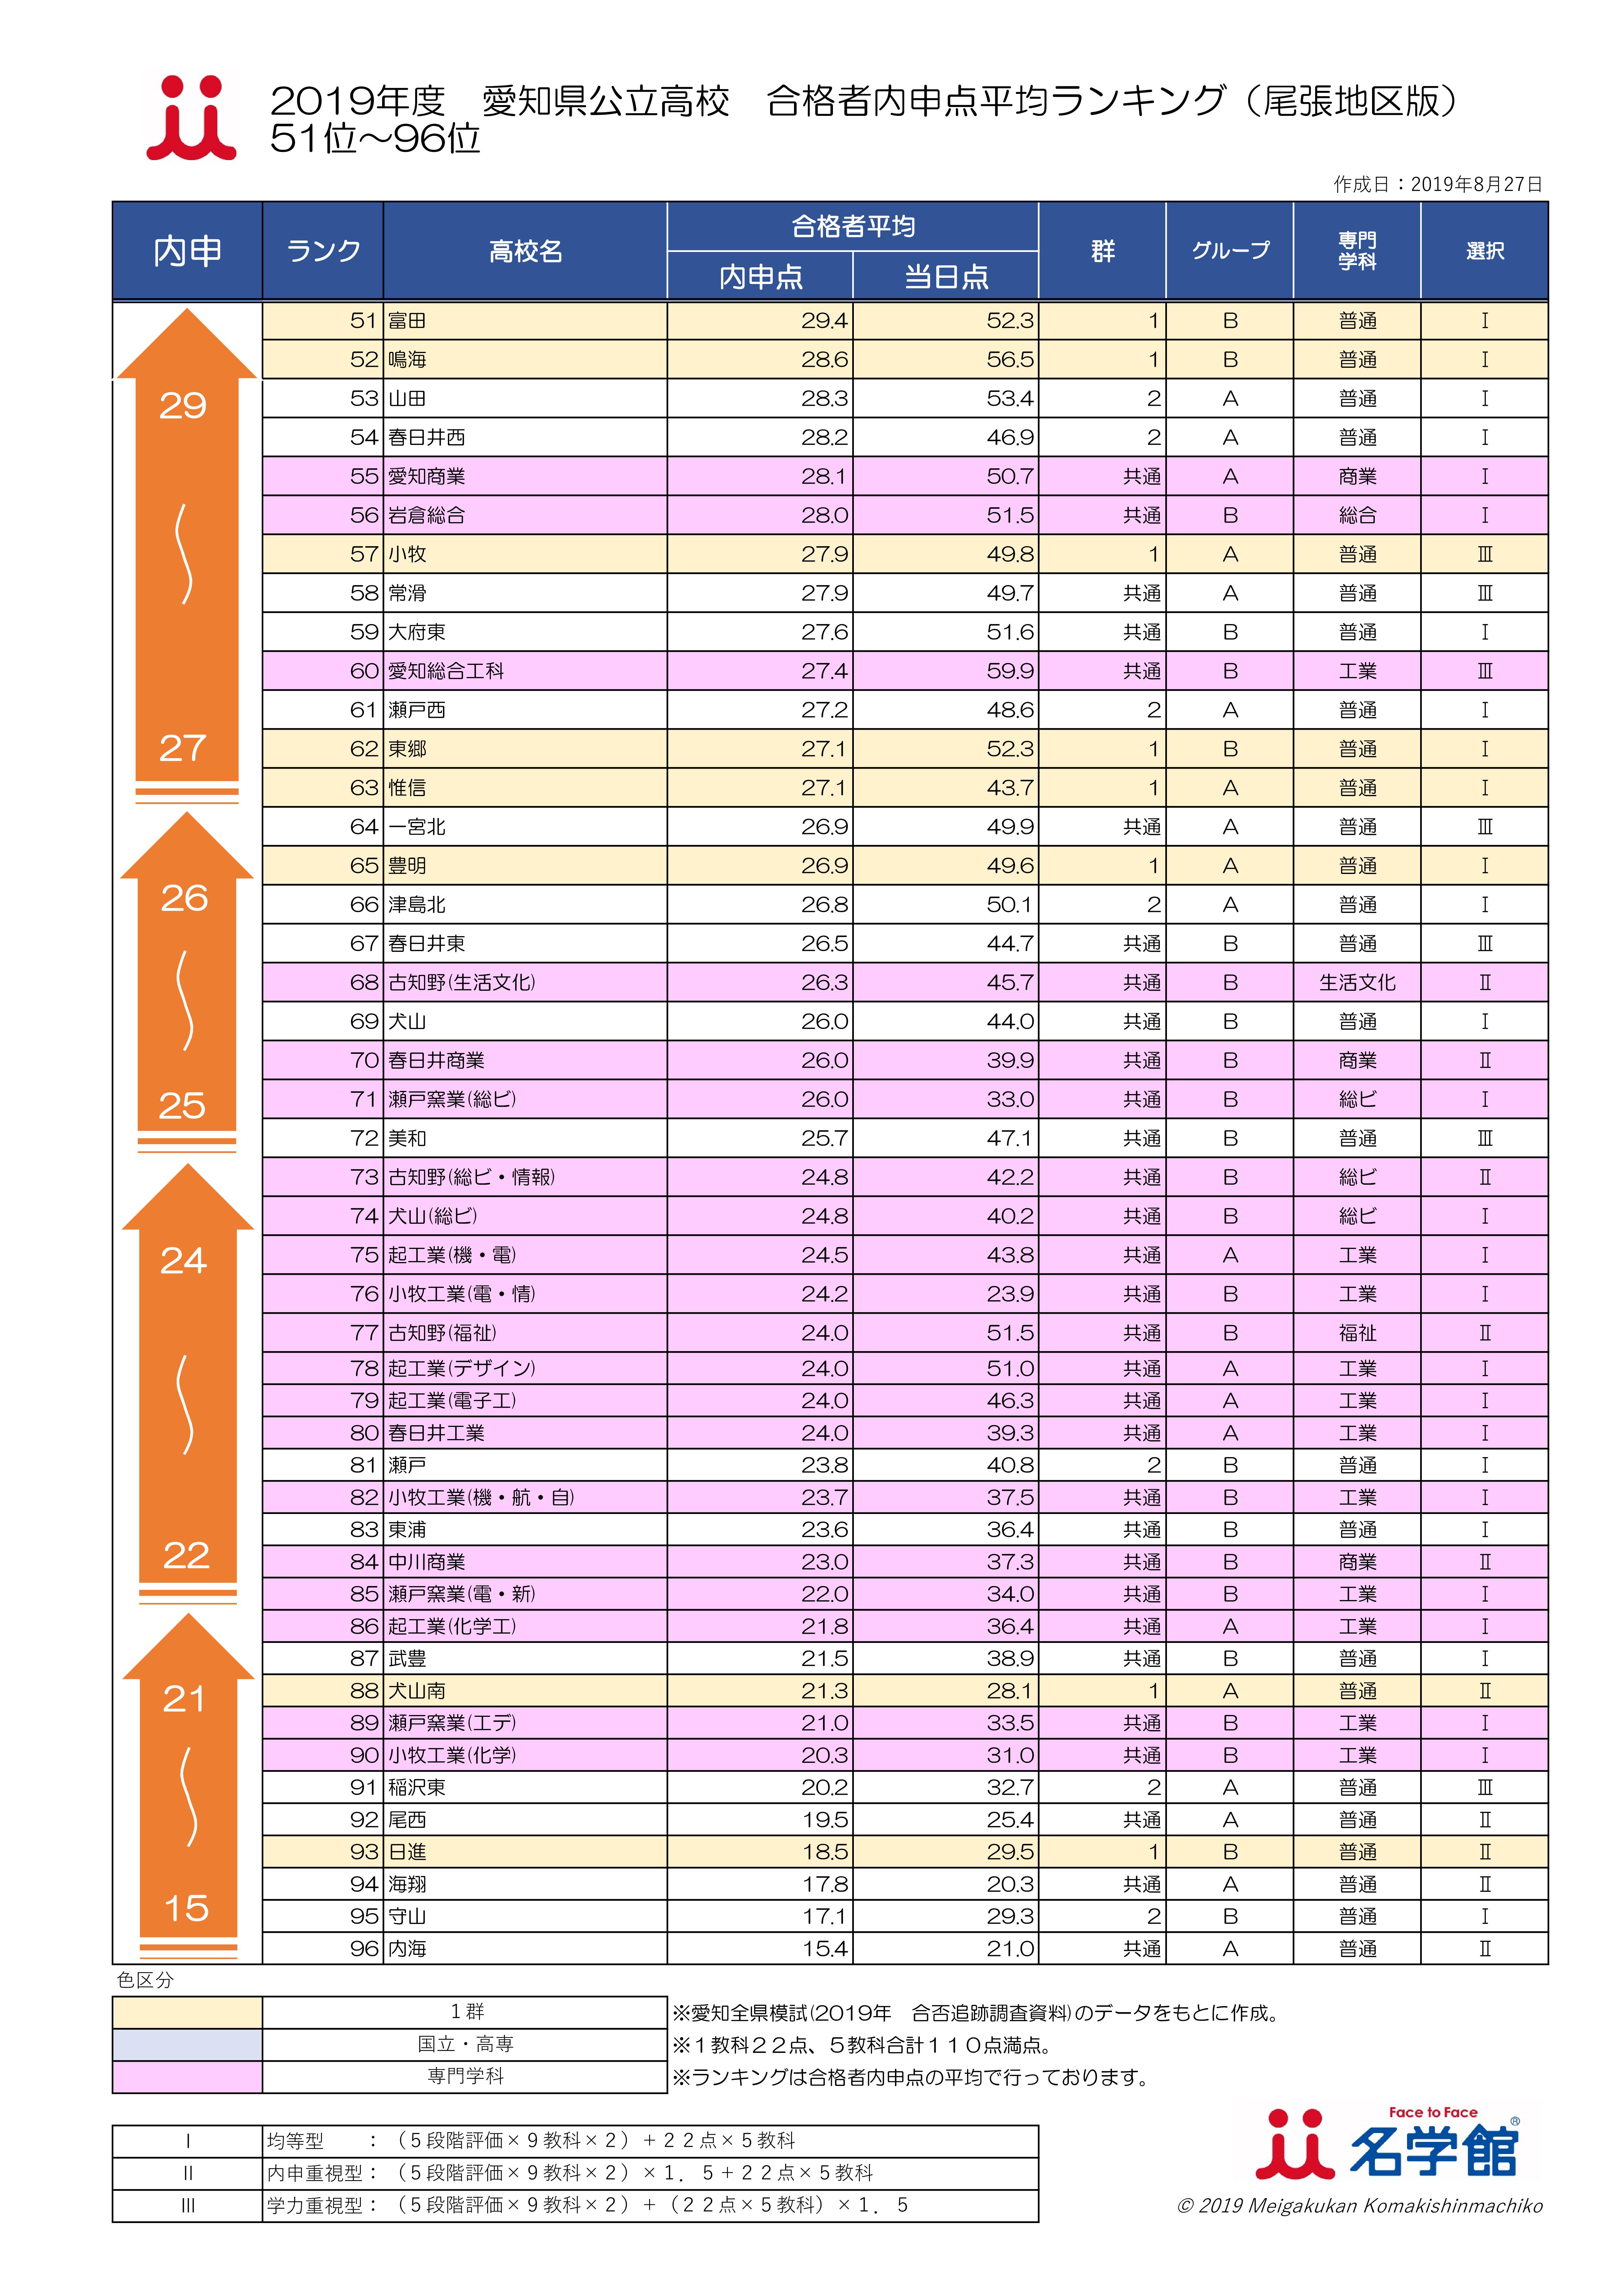 2019 愛知県公立高校ランキング 51-96